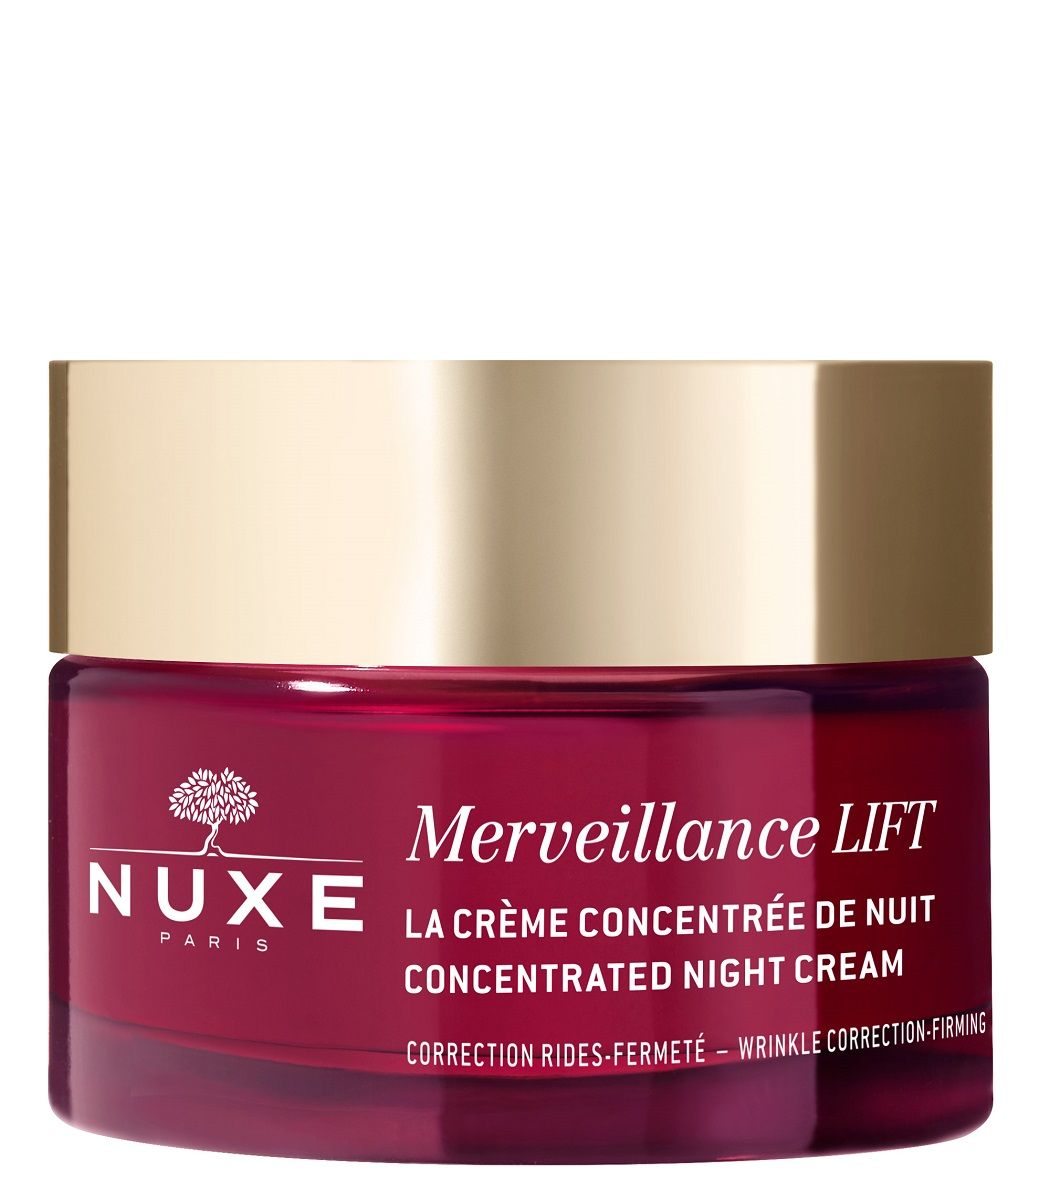 Ночной крем для лица Nuxe Merveillance Lift, 50 мл крем против морщин merveillance lift crema glow nuxe 50 мл